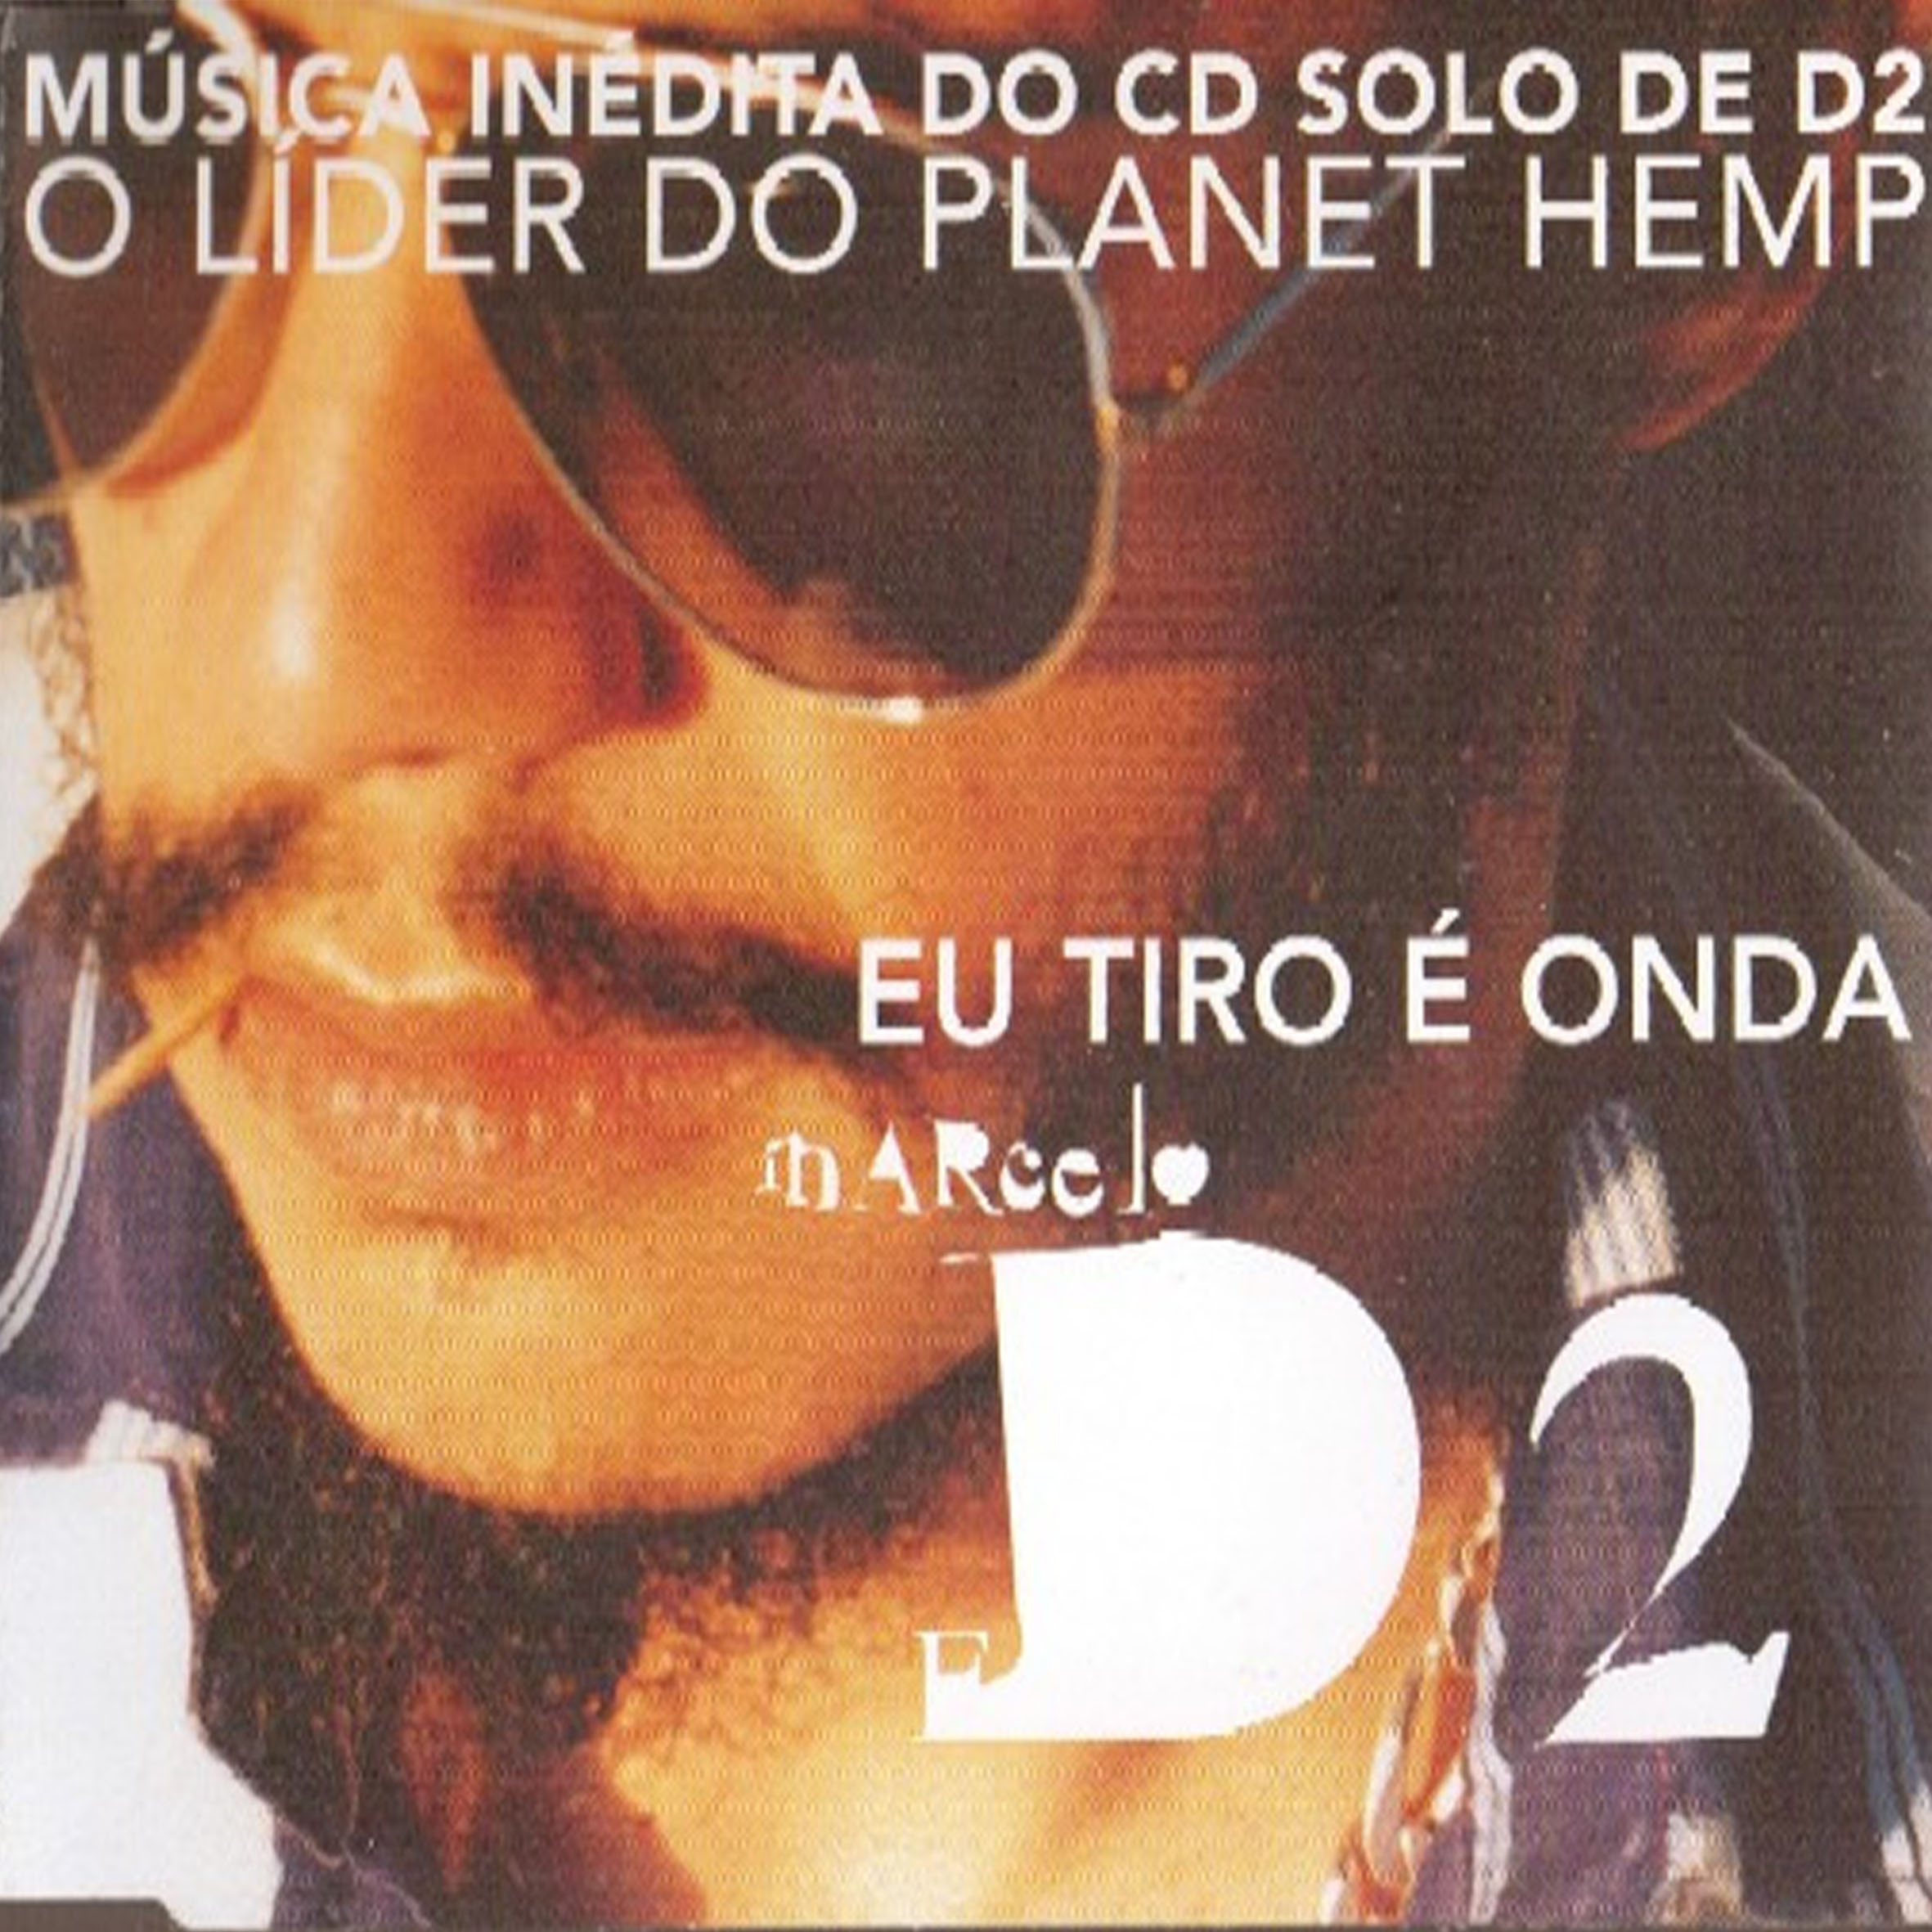 CD - Marcelo D2 - Eu Tiro É Onda (Single Promo)